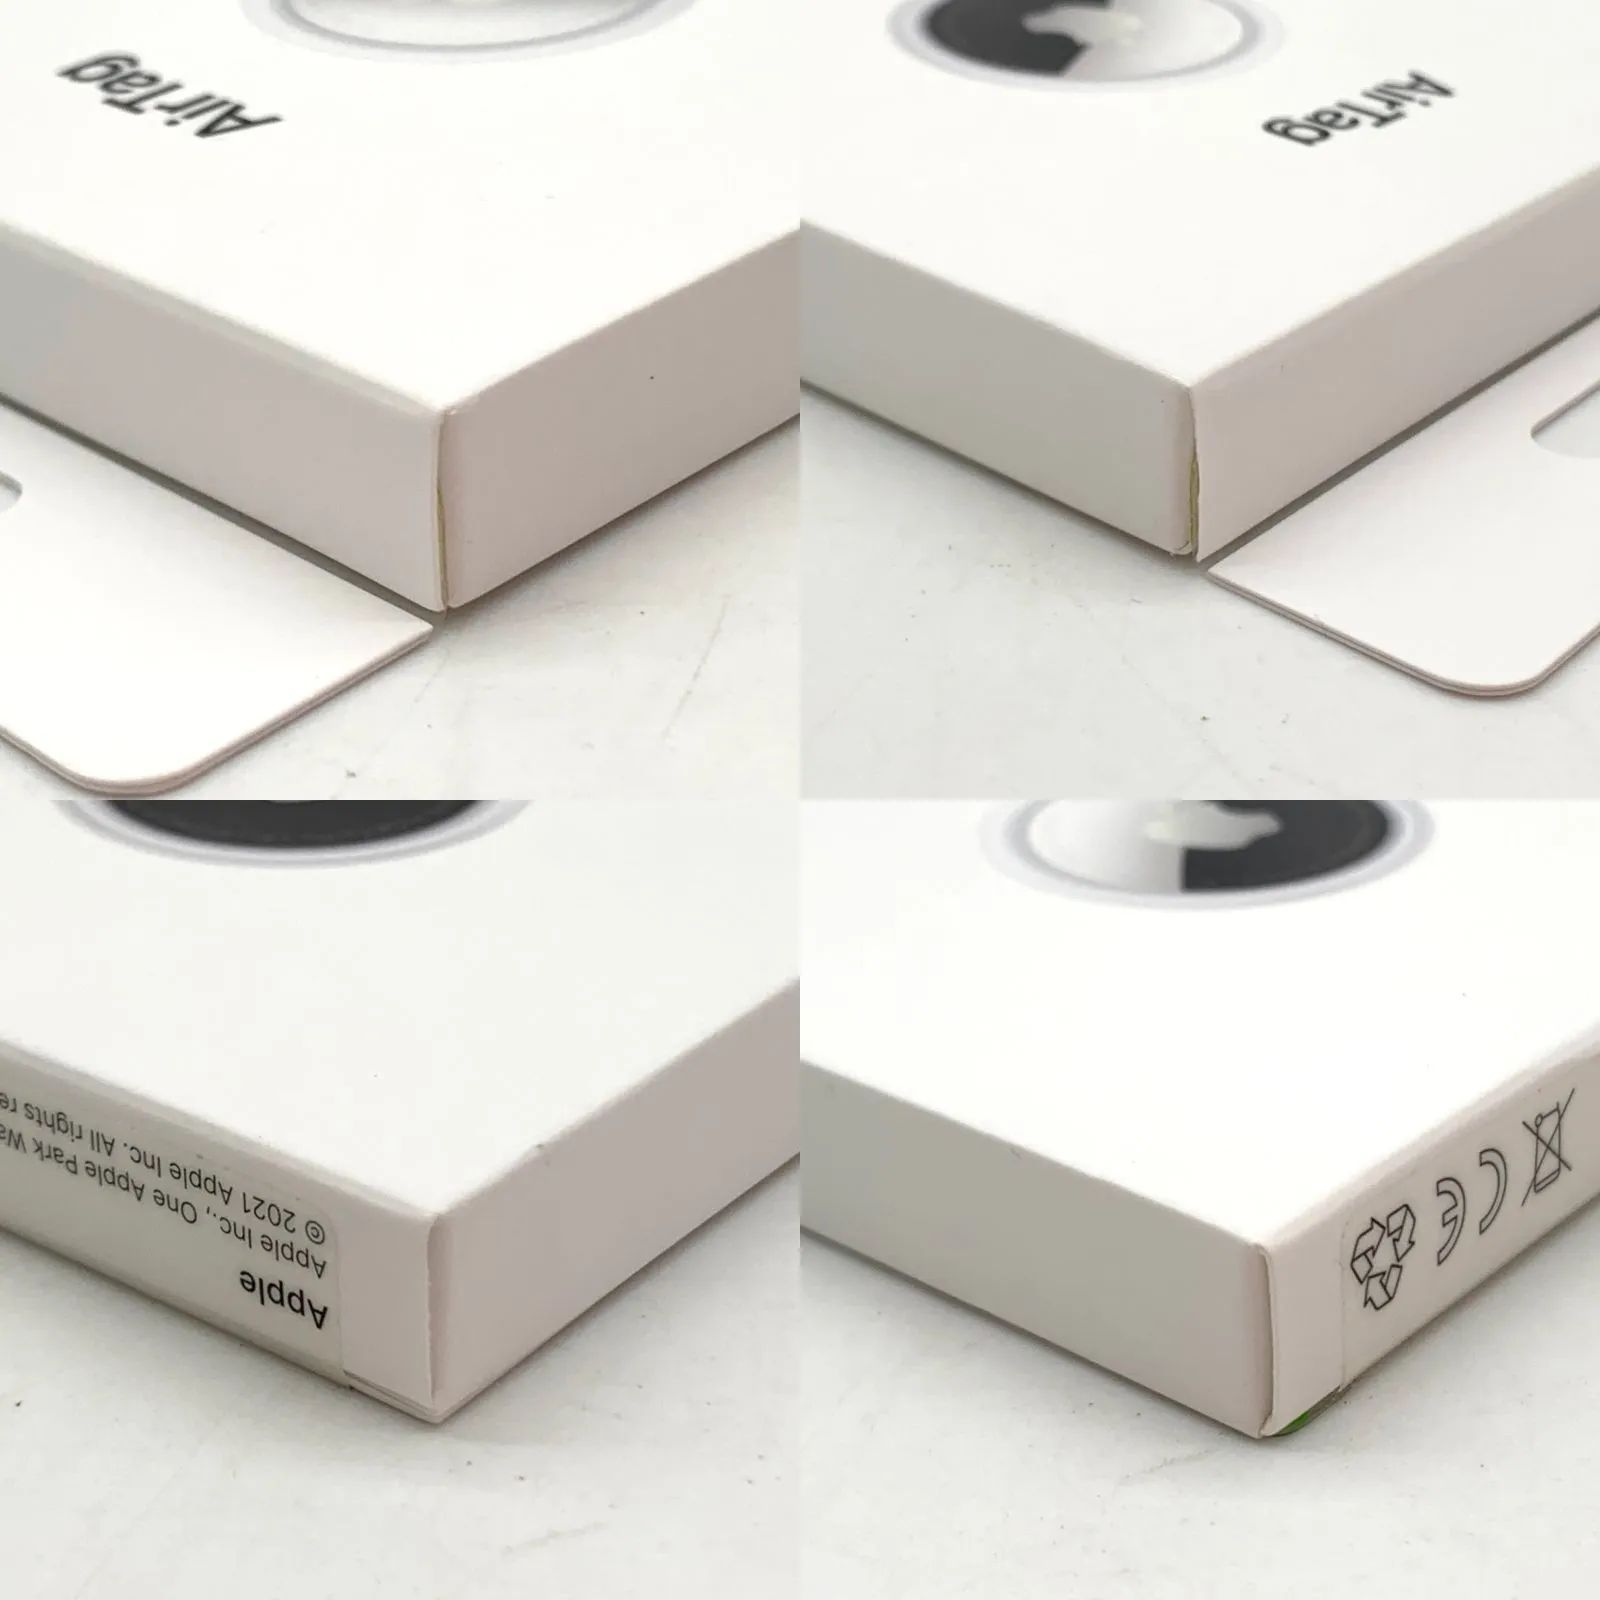 ▽【未開封品/Sランク】Apple AirTag うさぎ 限定デザイン MQLX3J/A 箱 